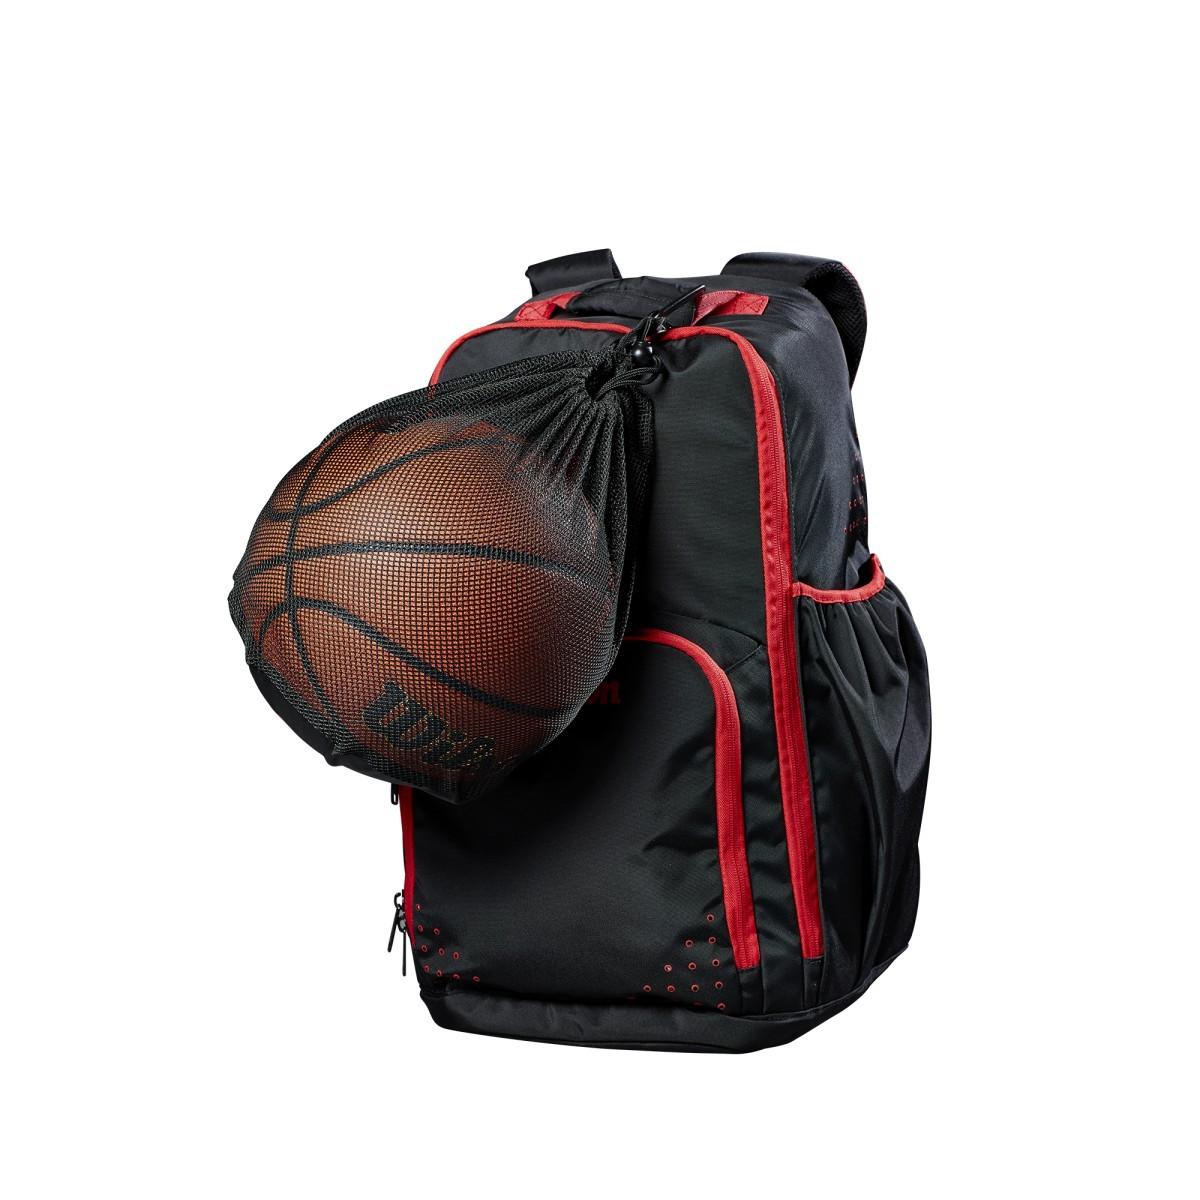 Wilson Single Ball Basketball Bag WTB201910 - Just Rackets